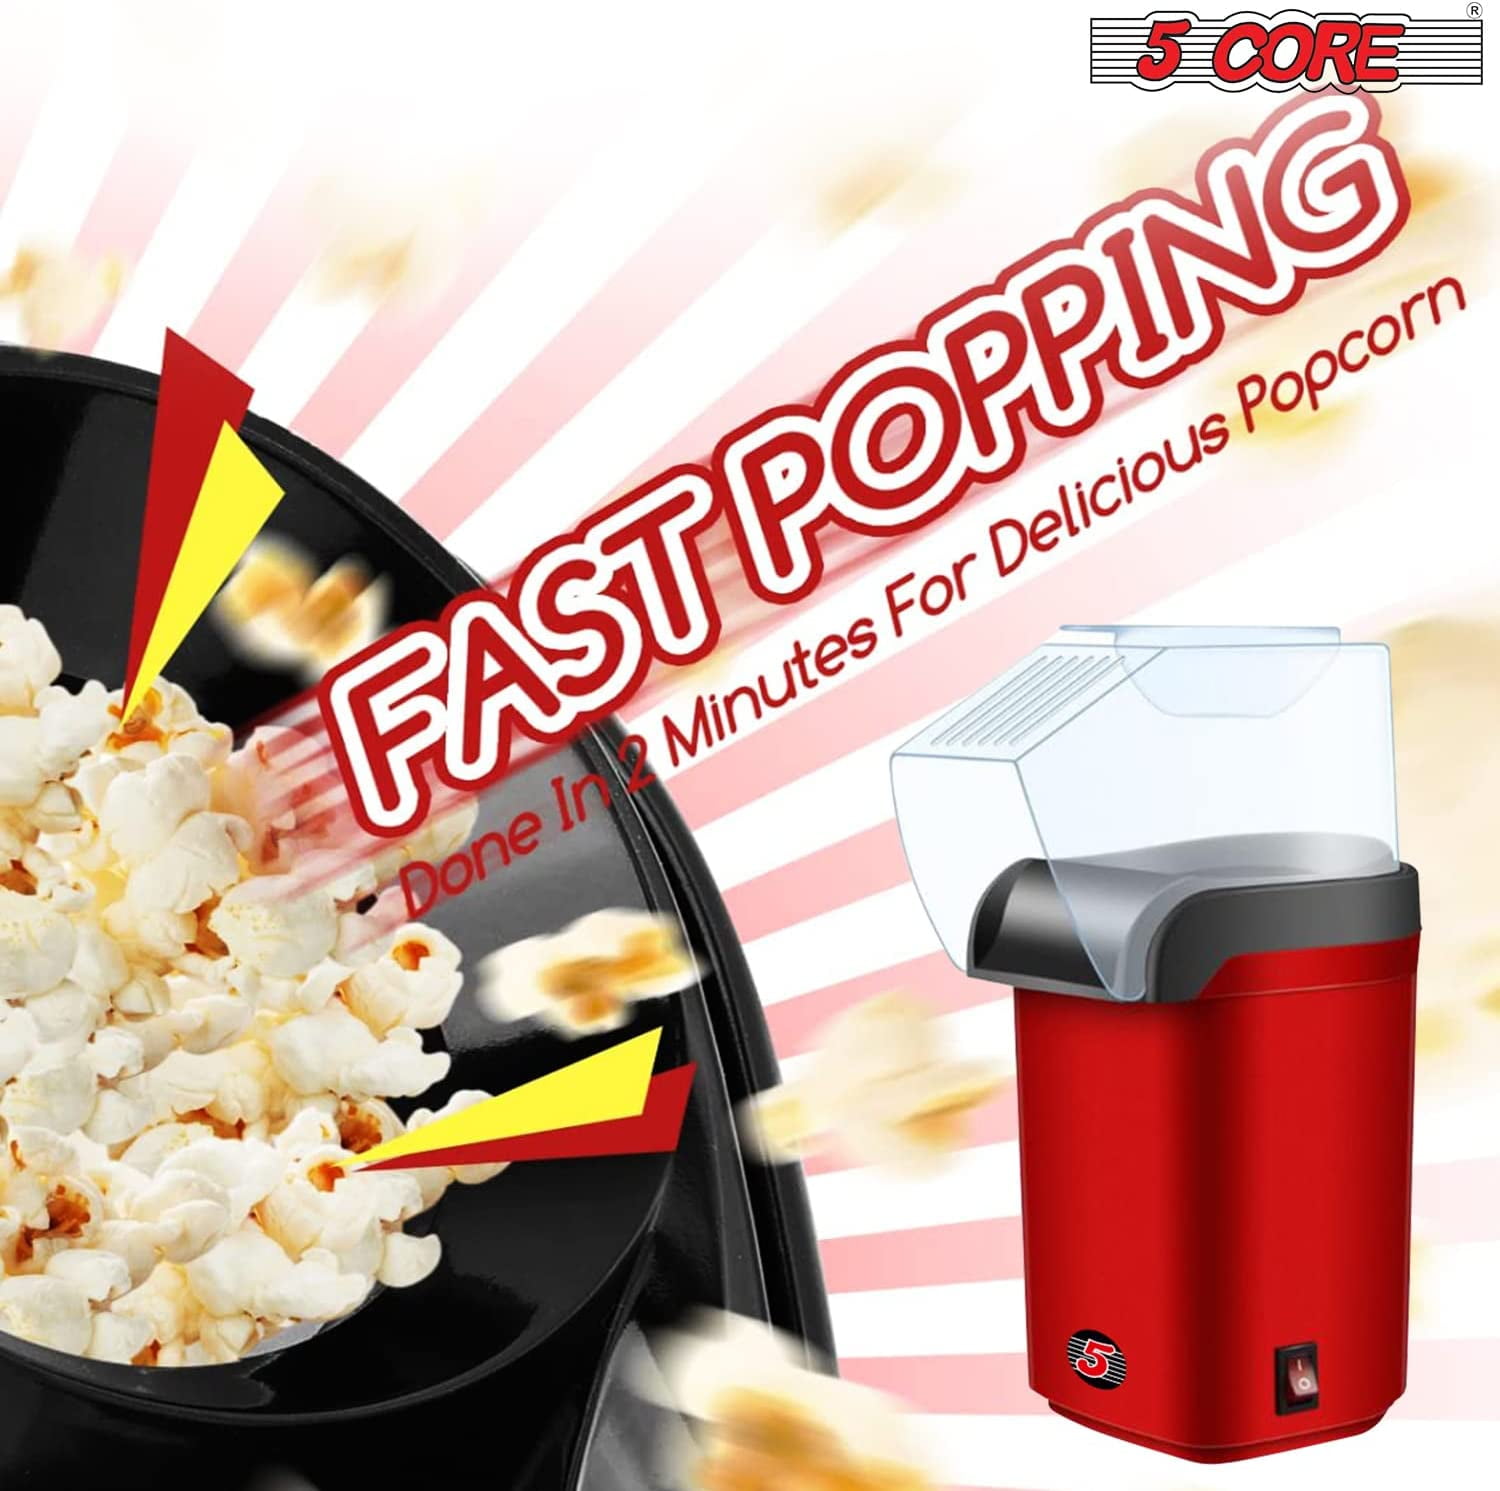 5 Core Popcorn Popper Air Popper Machine Popcorn Maker Hot Air